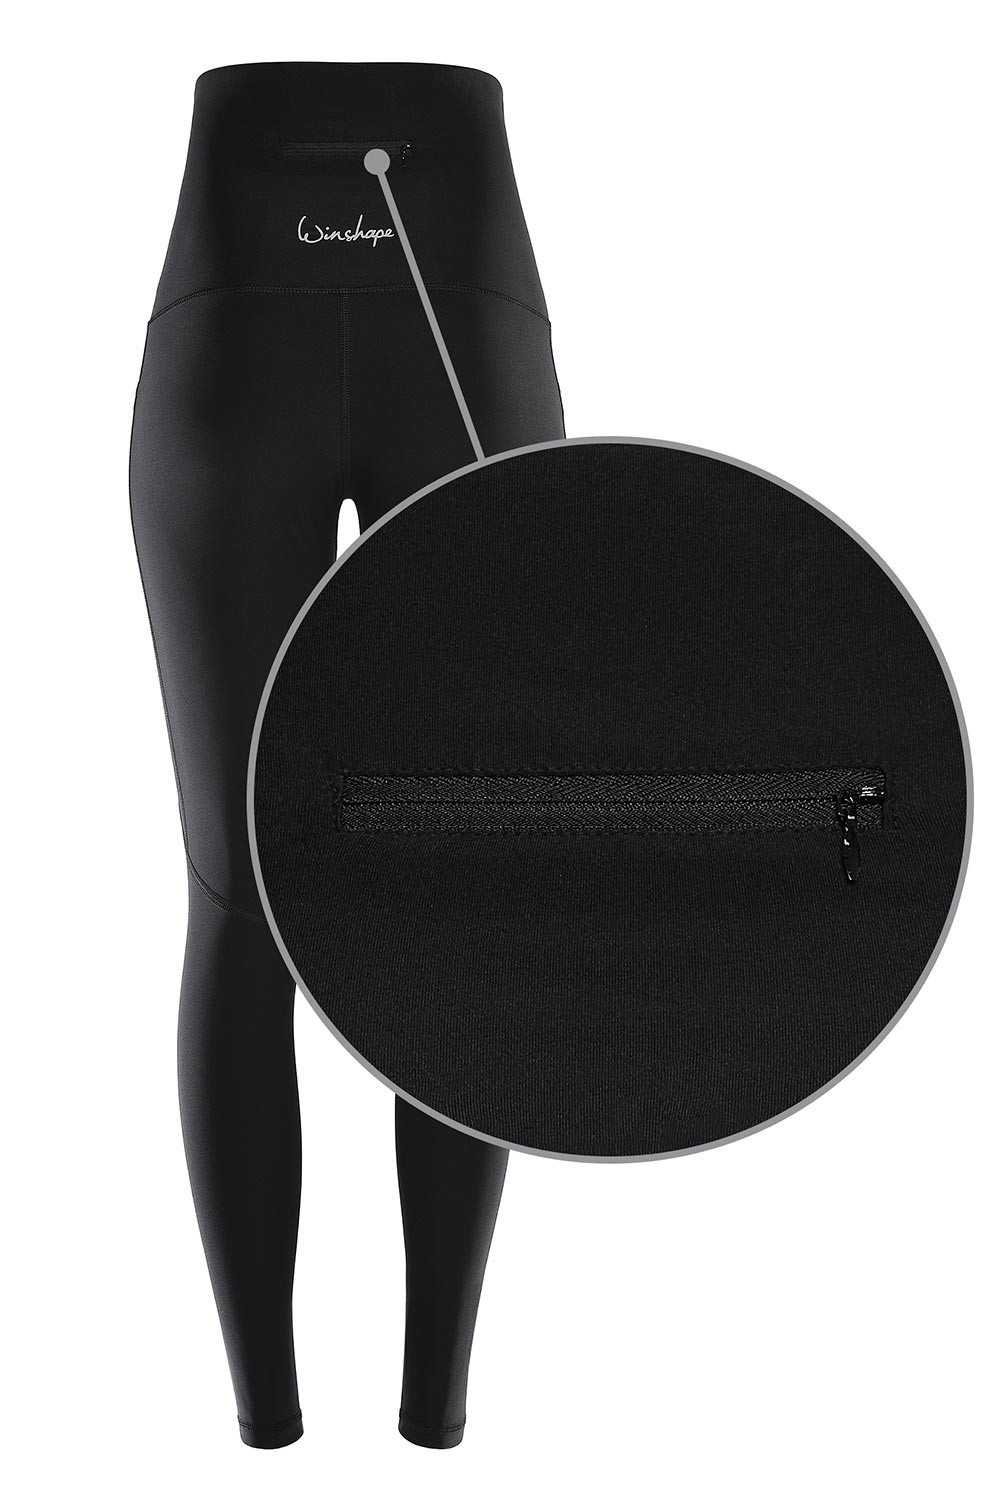 Slim Taschen, Style praktischen Shape Power drei HWL114 schwarz, Functional Tights Waist” Winshape mit “High